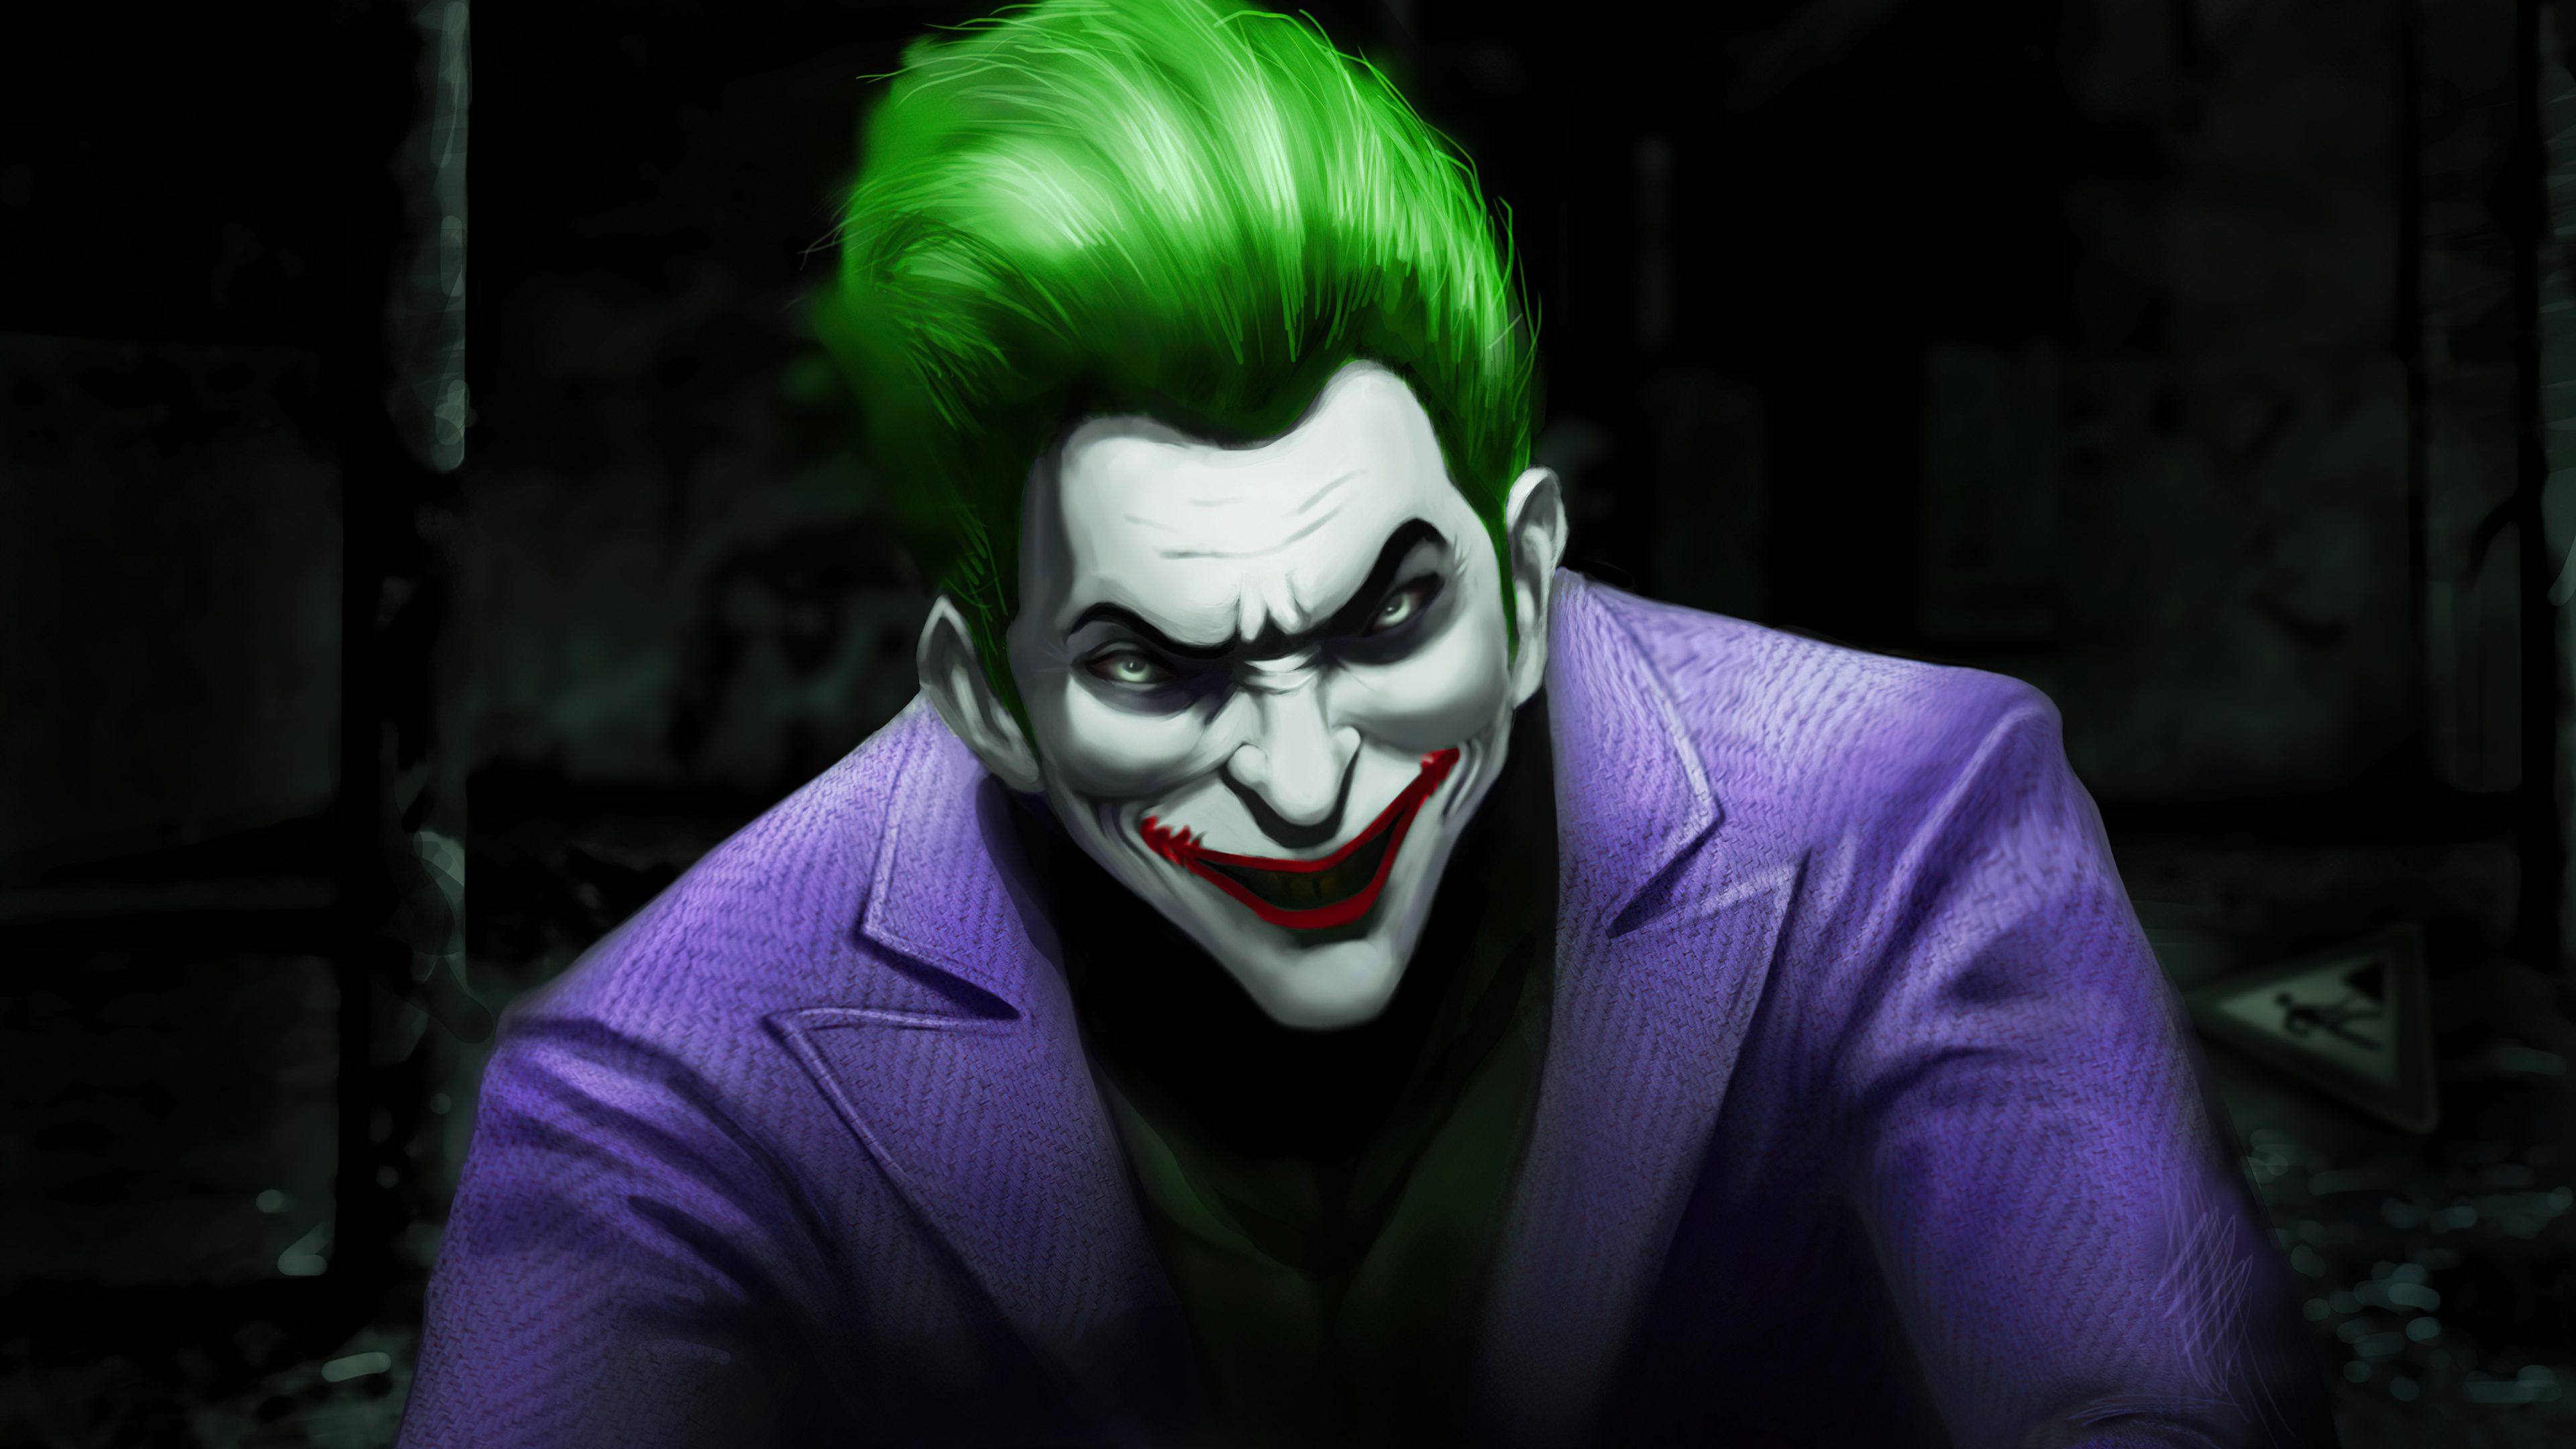 Joker Count Your Odds 4k Wallpaper,HD Superheroes Wallpapers,4k ...